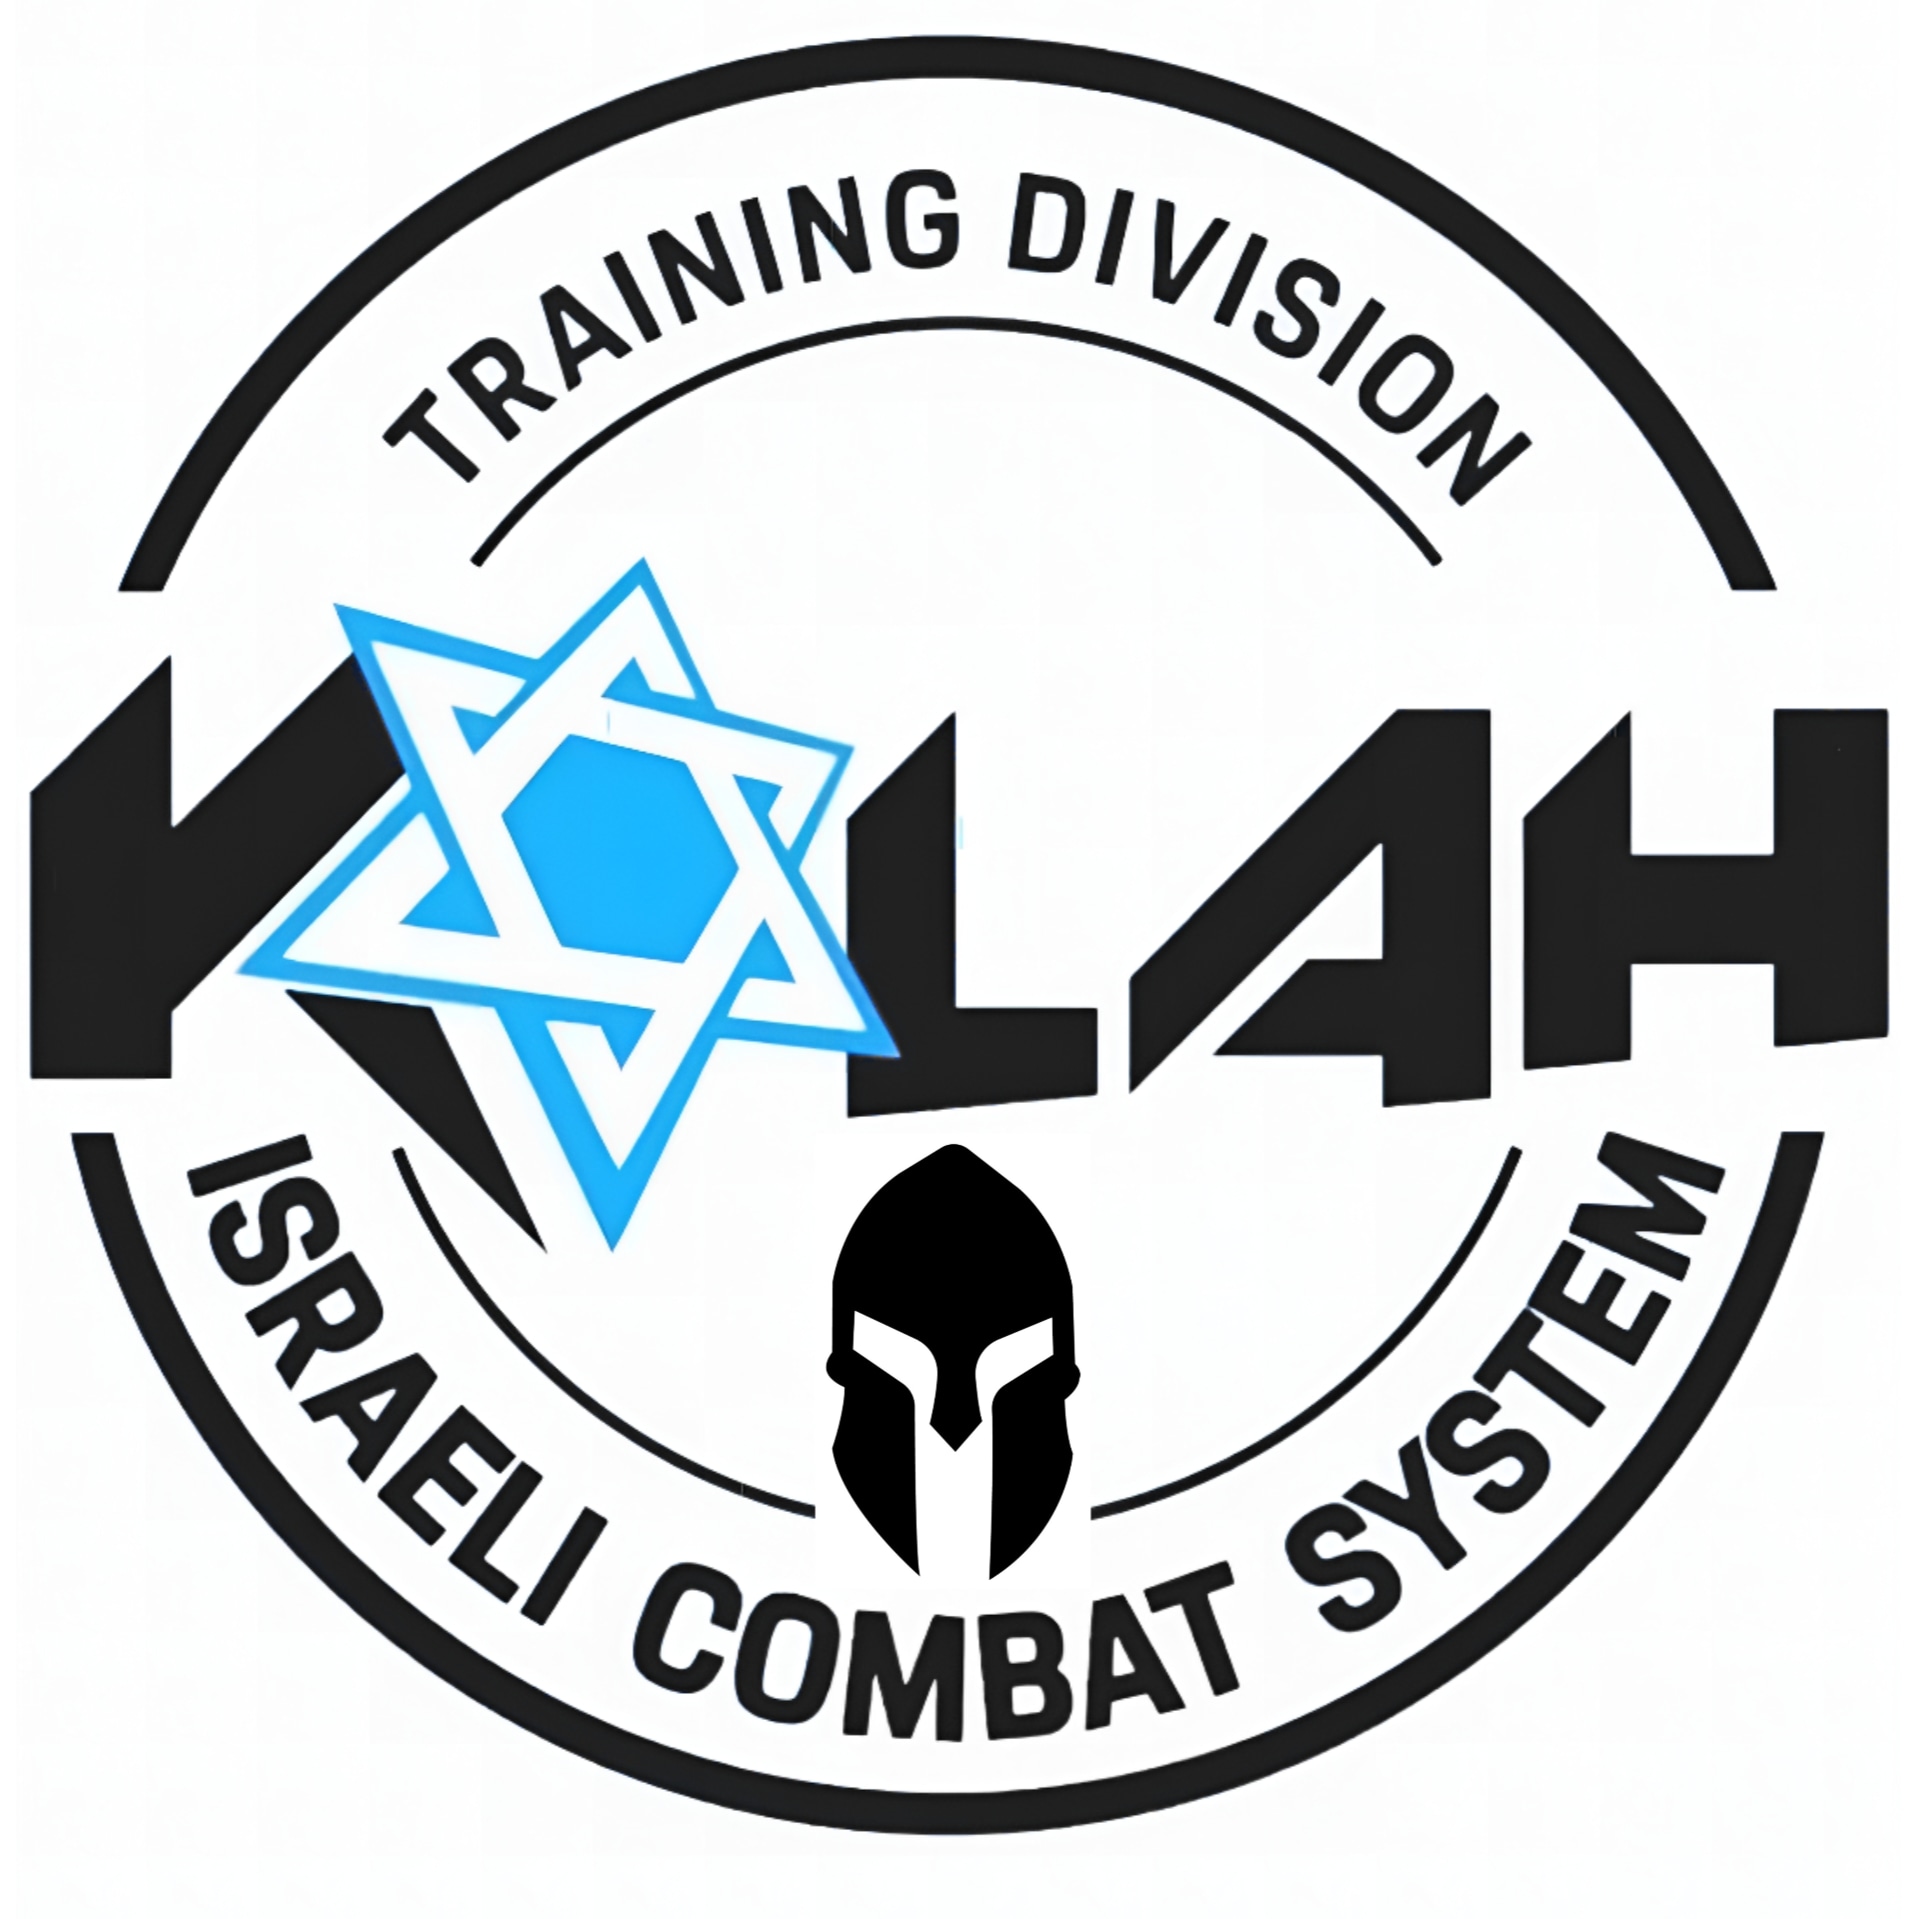 Kalah Combat System Offenbach